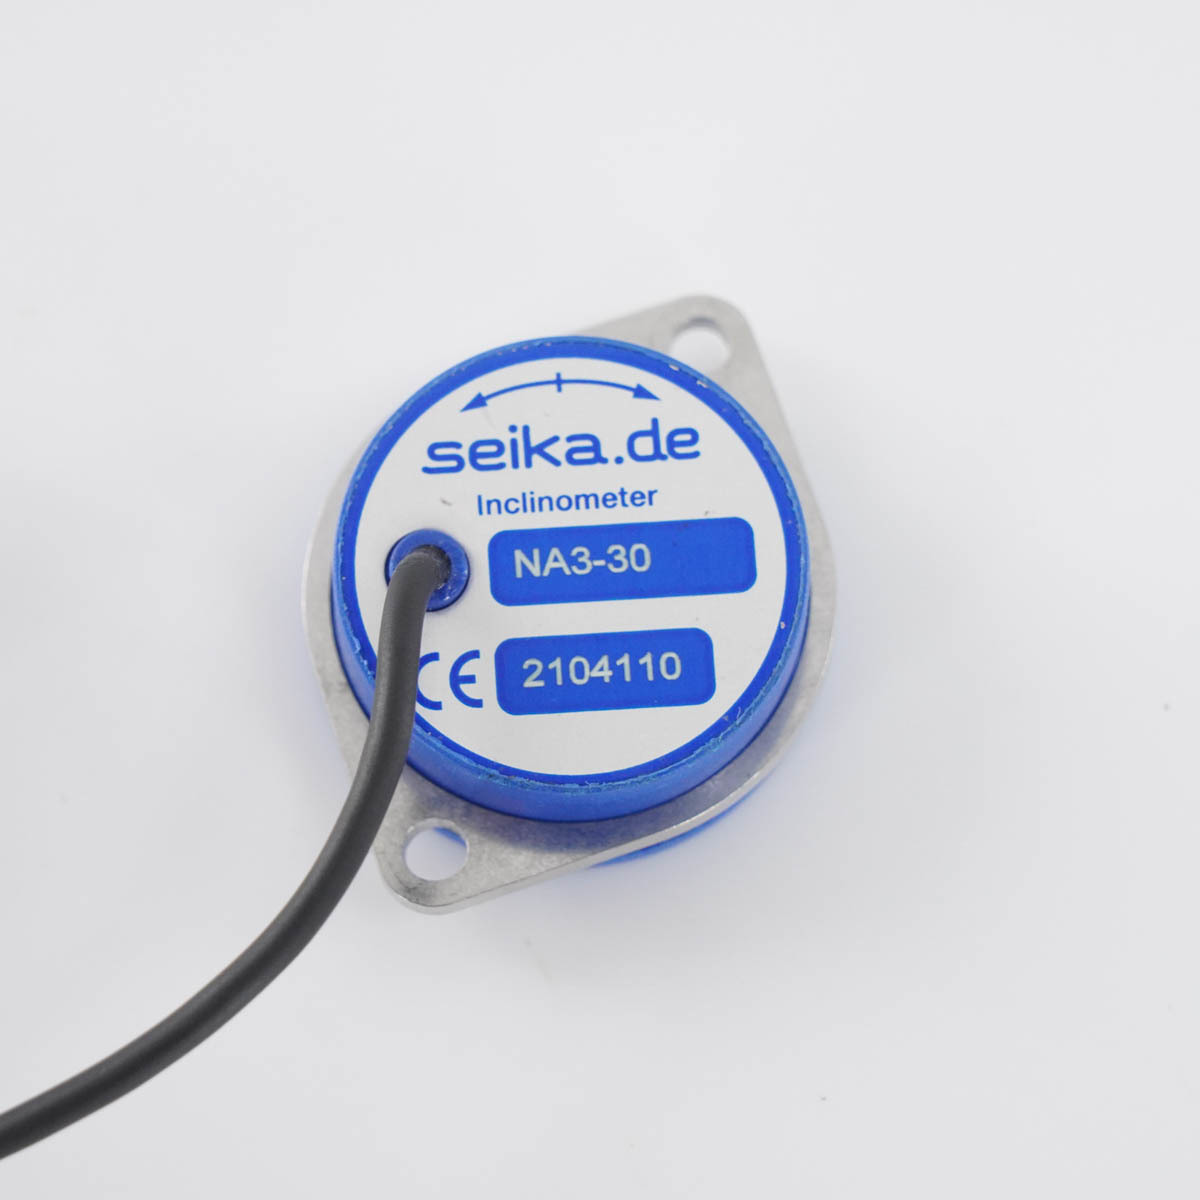 [DW] 8日保証 3台入荷 NA3-30 seika.de インテクノス・ジャパン Inclinometer 傾斜角センサー[05153-0712]_画像4